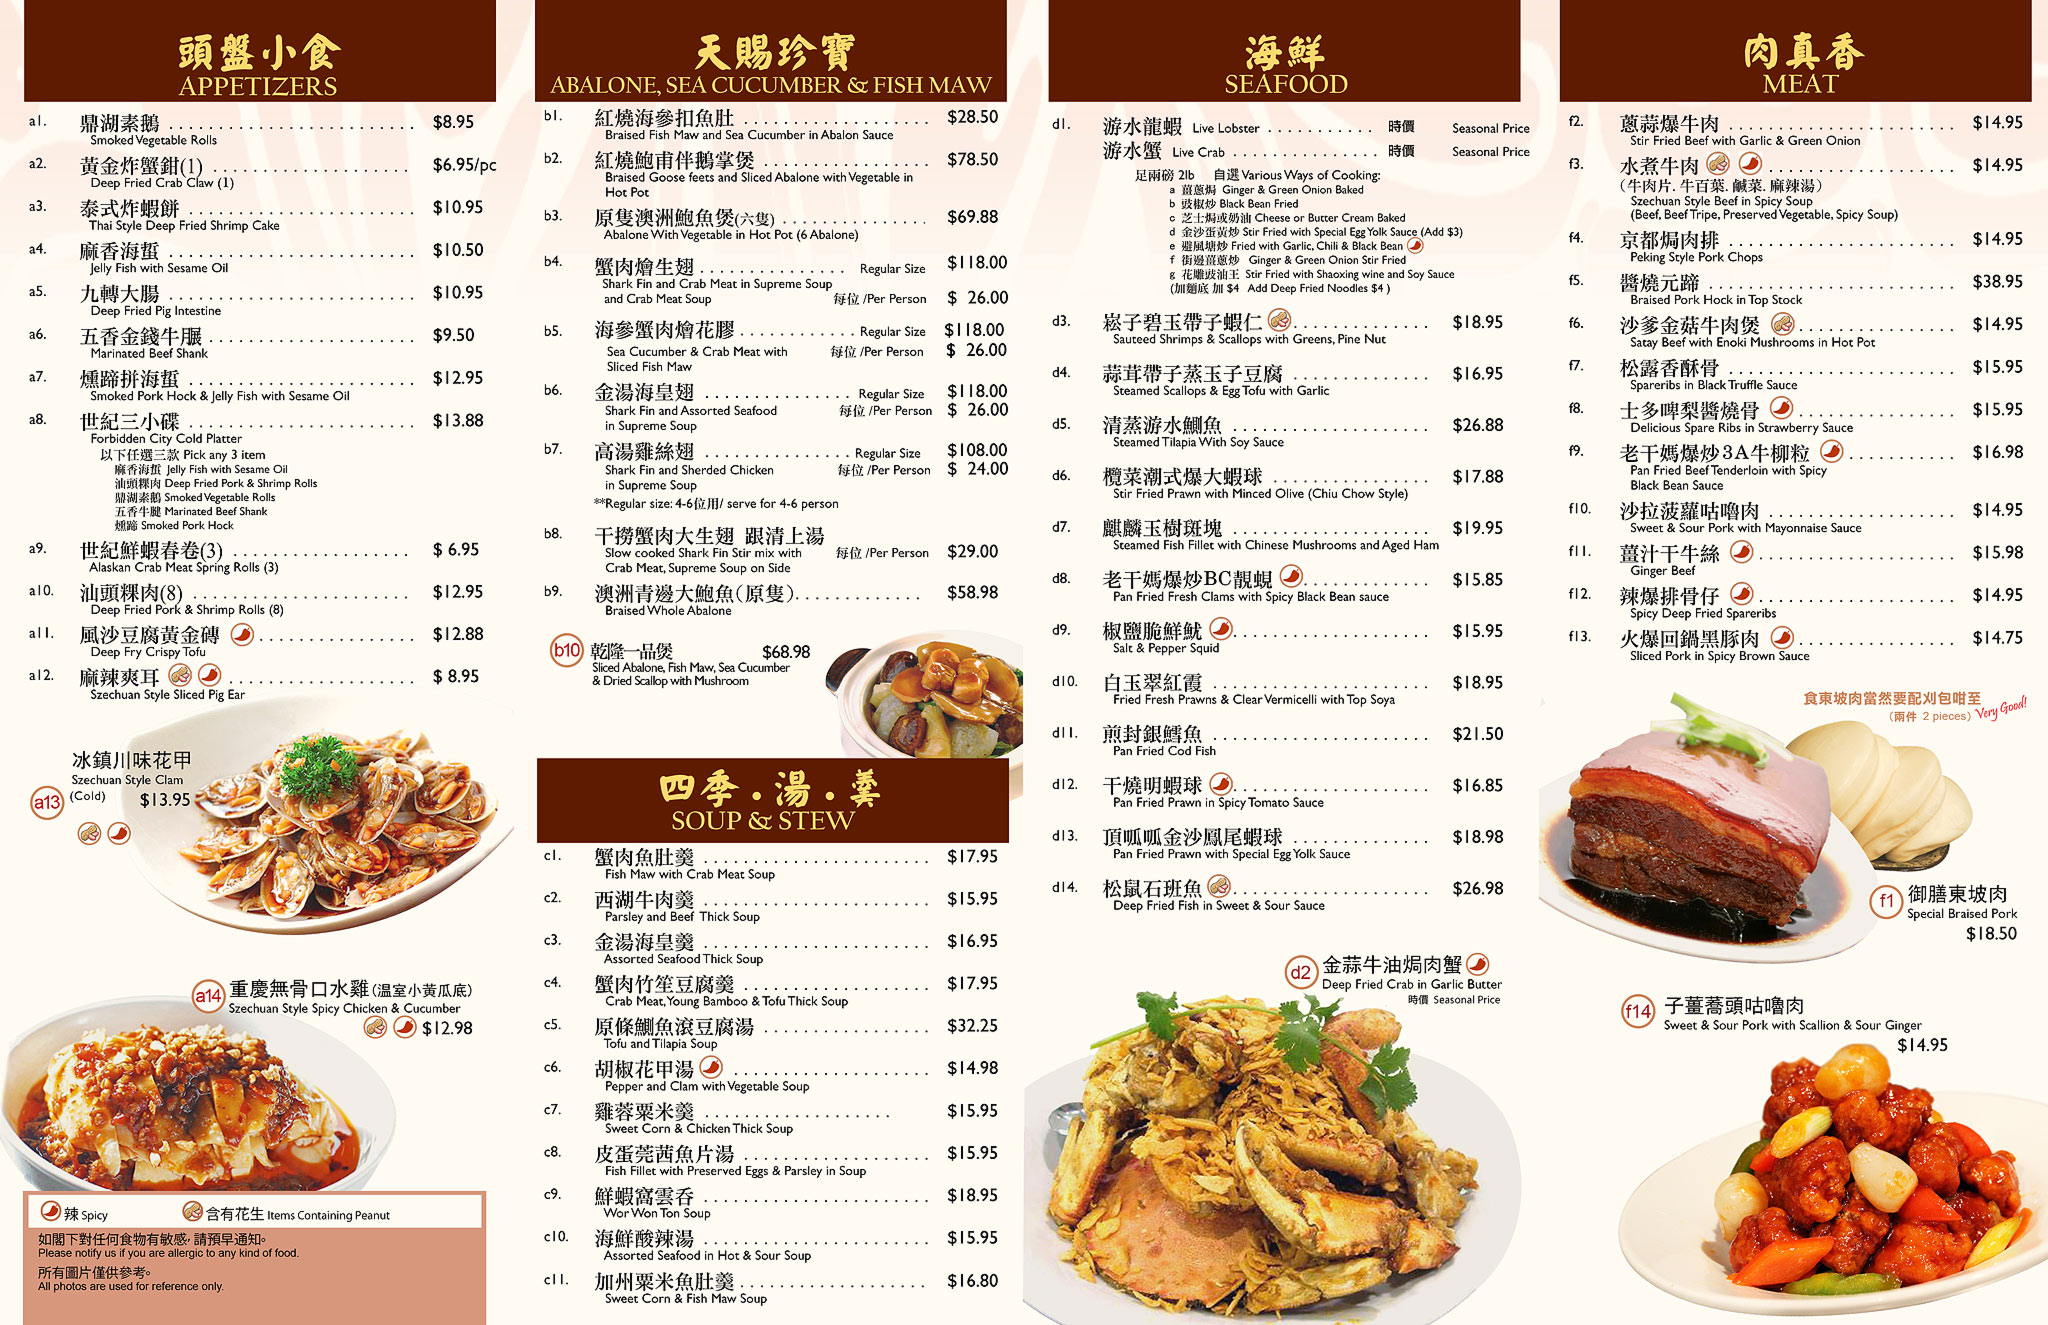 Ching asian bistro menu